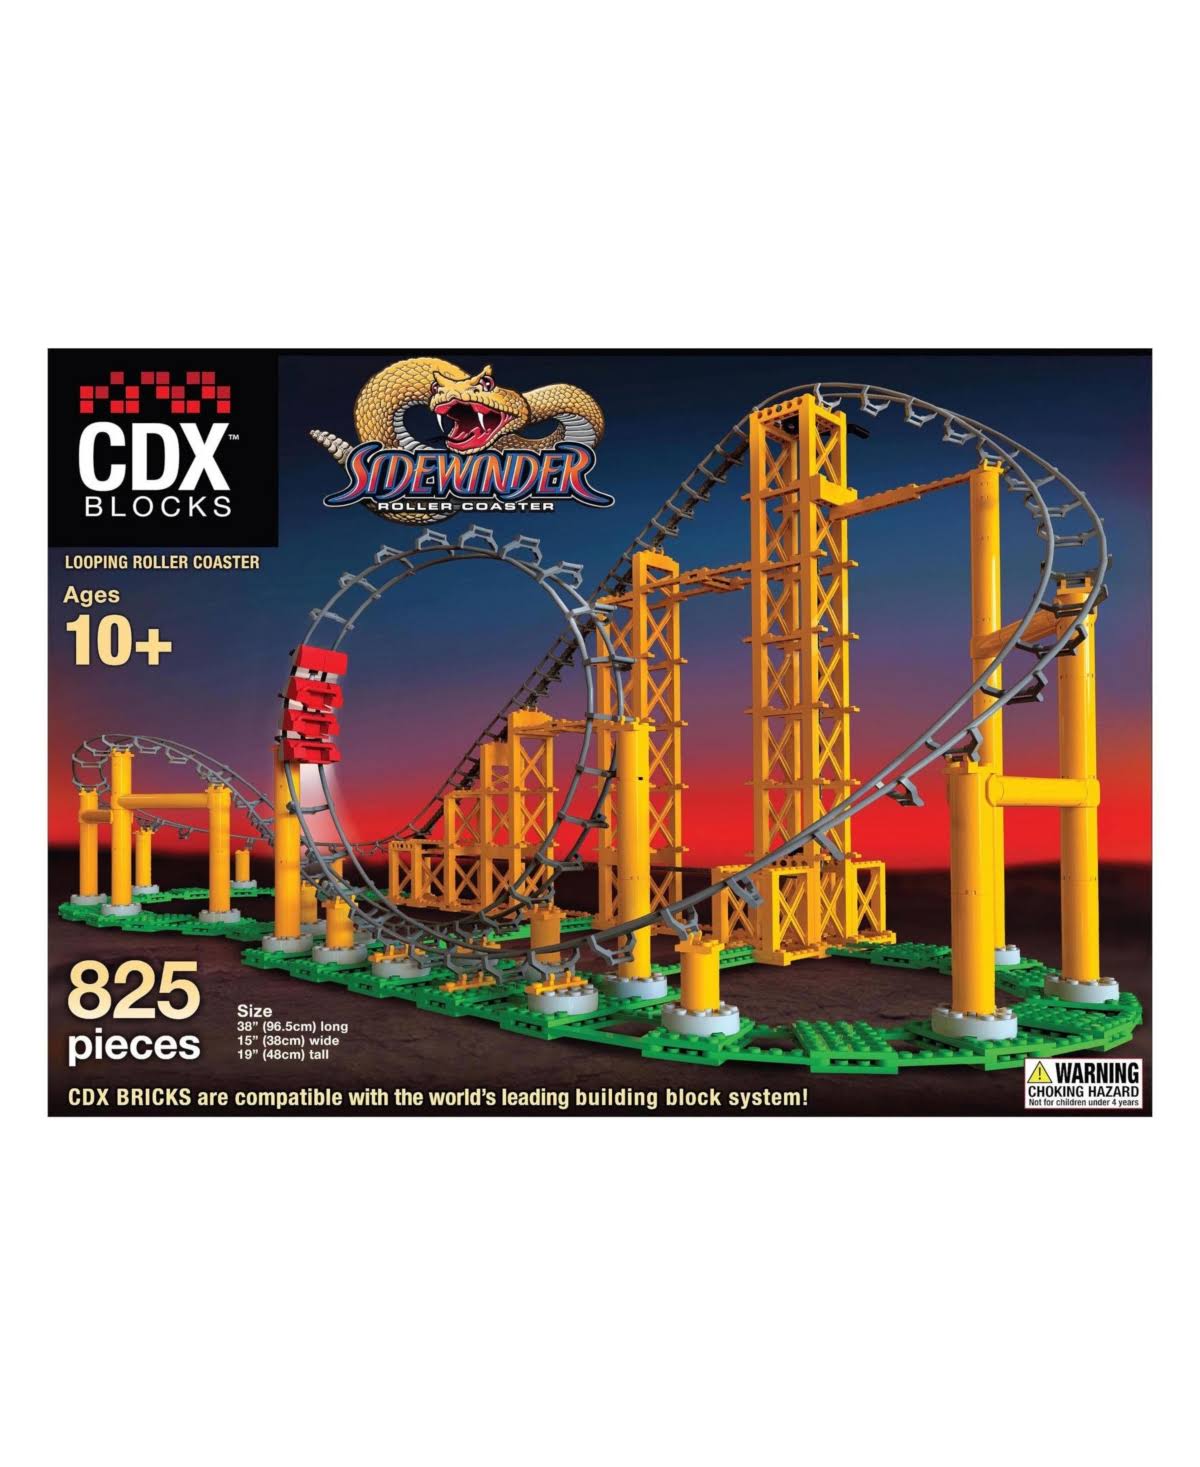 CDX Sidewinder Roller Coaster